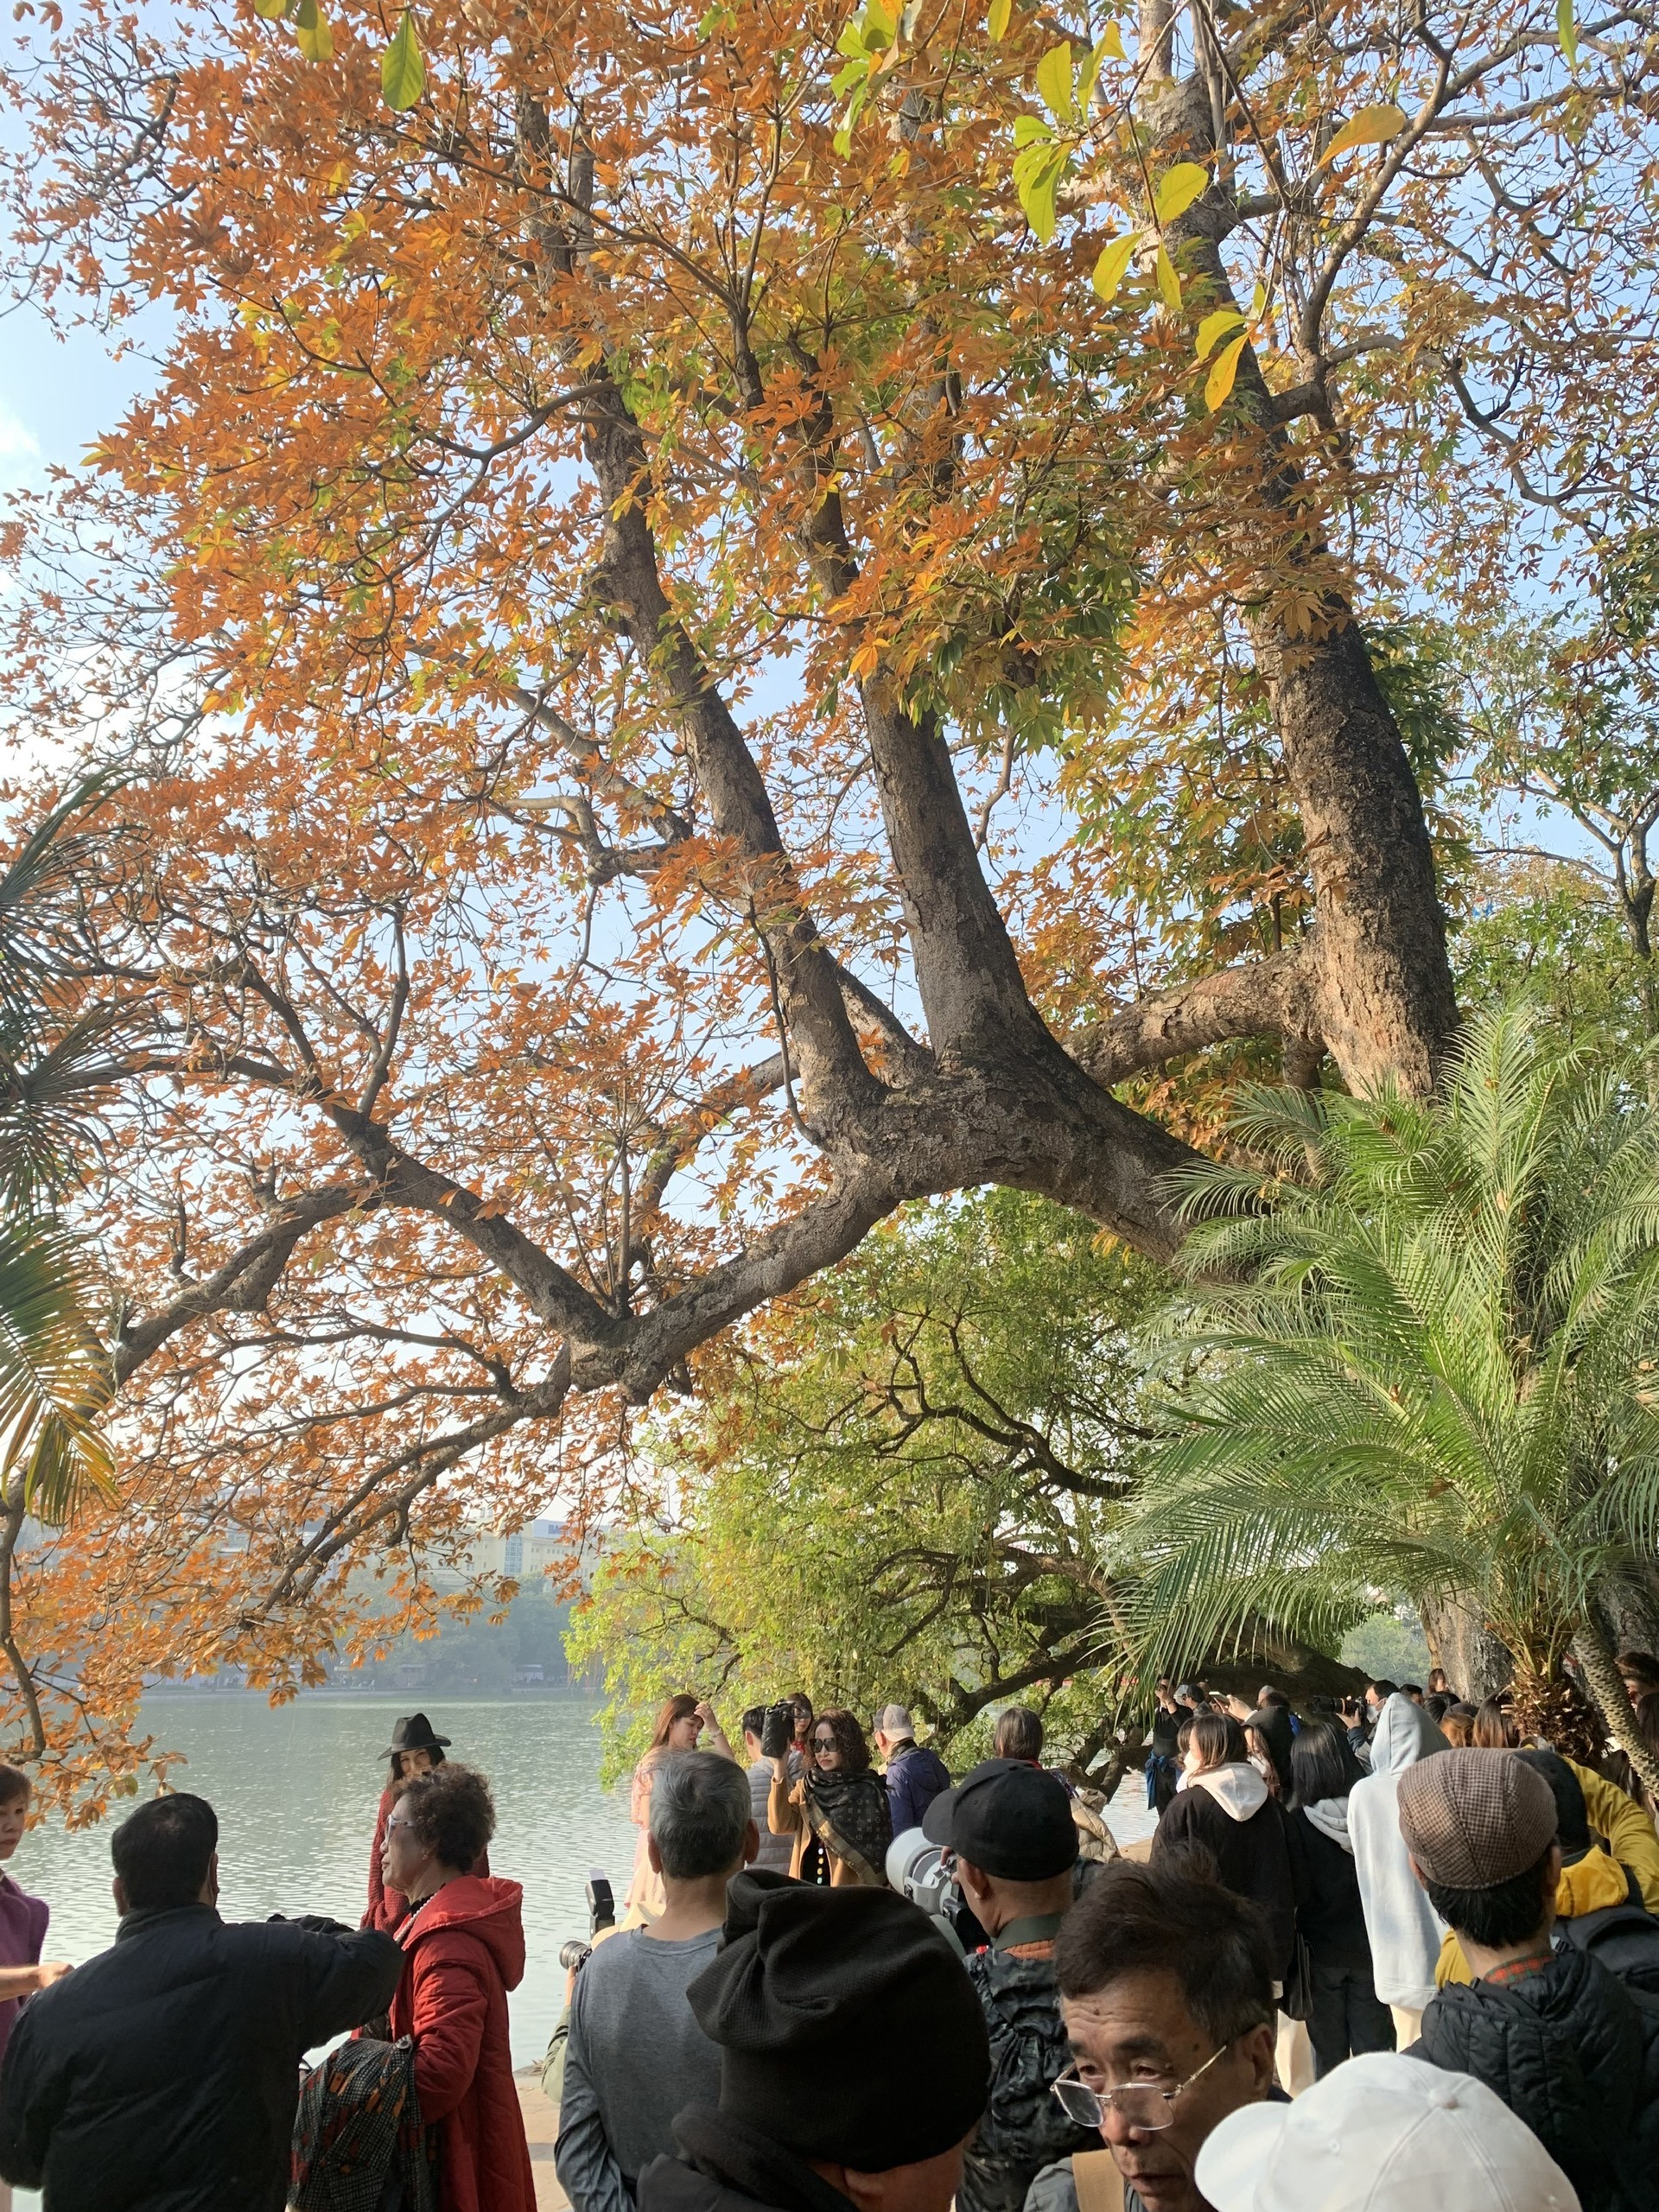 Đi dạo hồ Hoàn Kiếm (hồ Gươm) vào dịp này, bạn sẽ bắt gặp một cây cổ thụ lá nhuộm vàng rực cẩ một góc hồ. Nhìn từ xa, có thể thấy rất đông người đang đứng dưới tán cây để check-in, chụp những tấm ảnh đẹp dưới ánh nắng ấm áp của mặt trời.